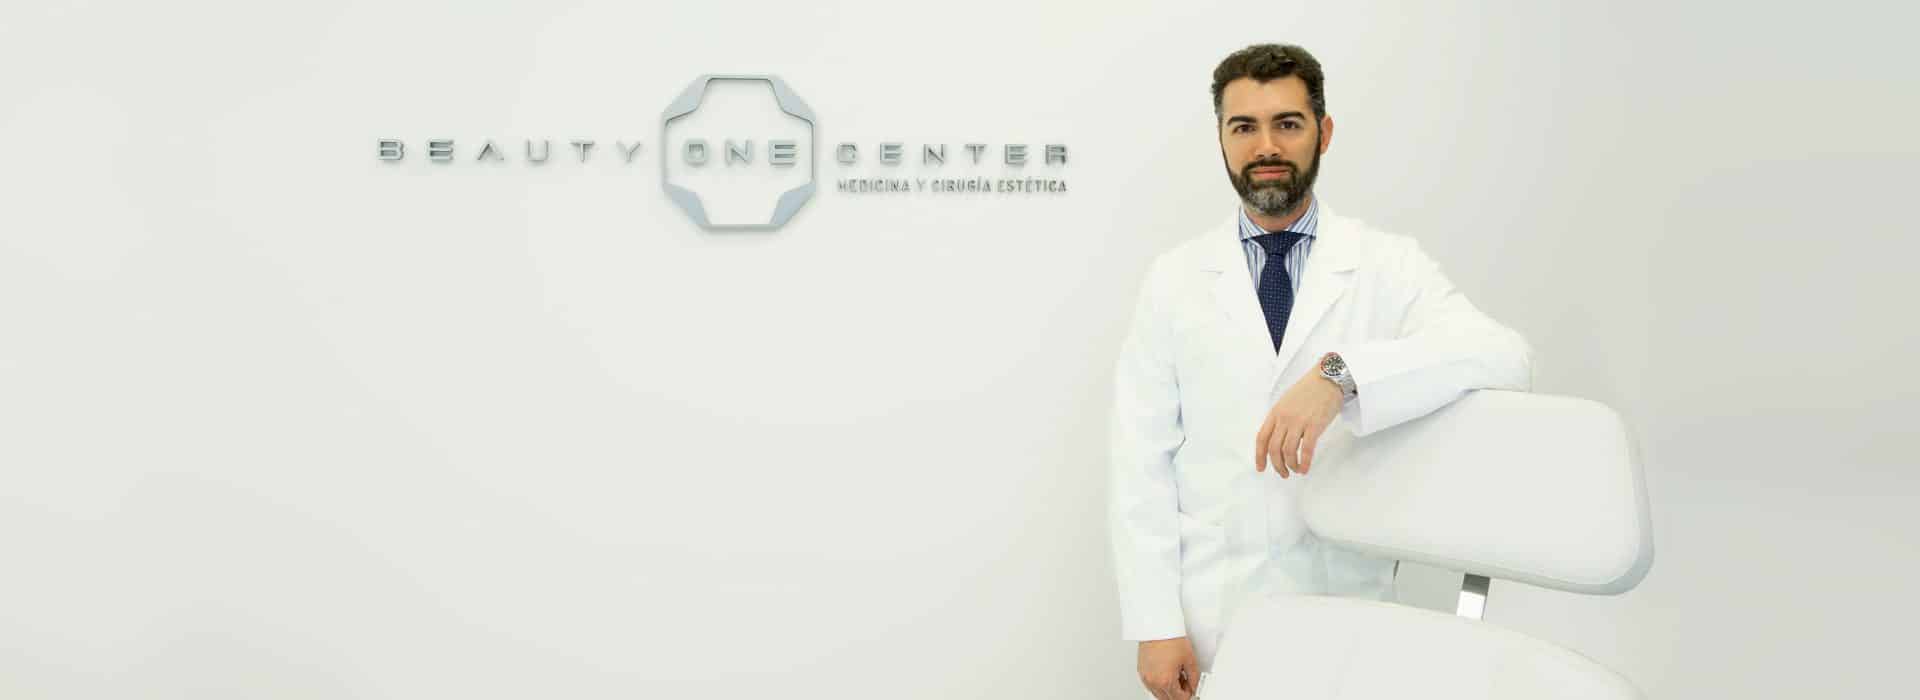 Presentación Beauty ONE Center por el Dr. Javier Galindo